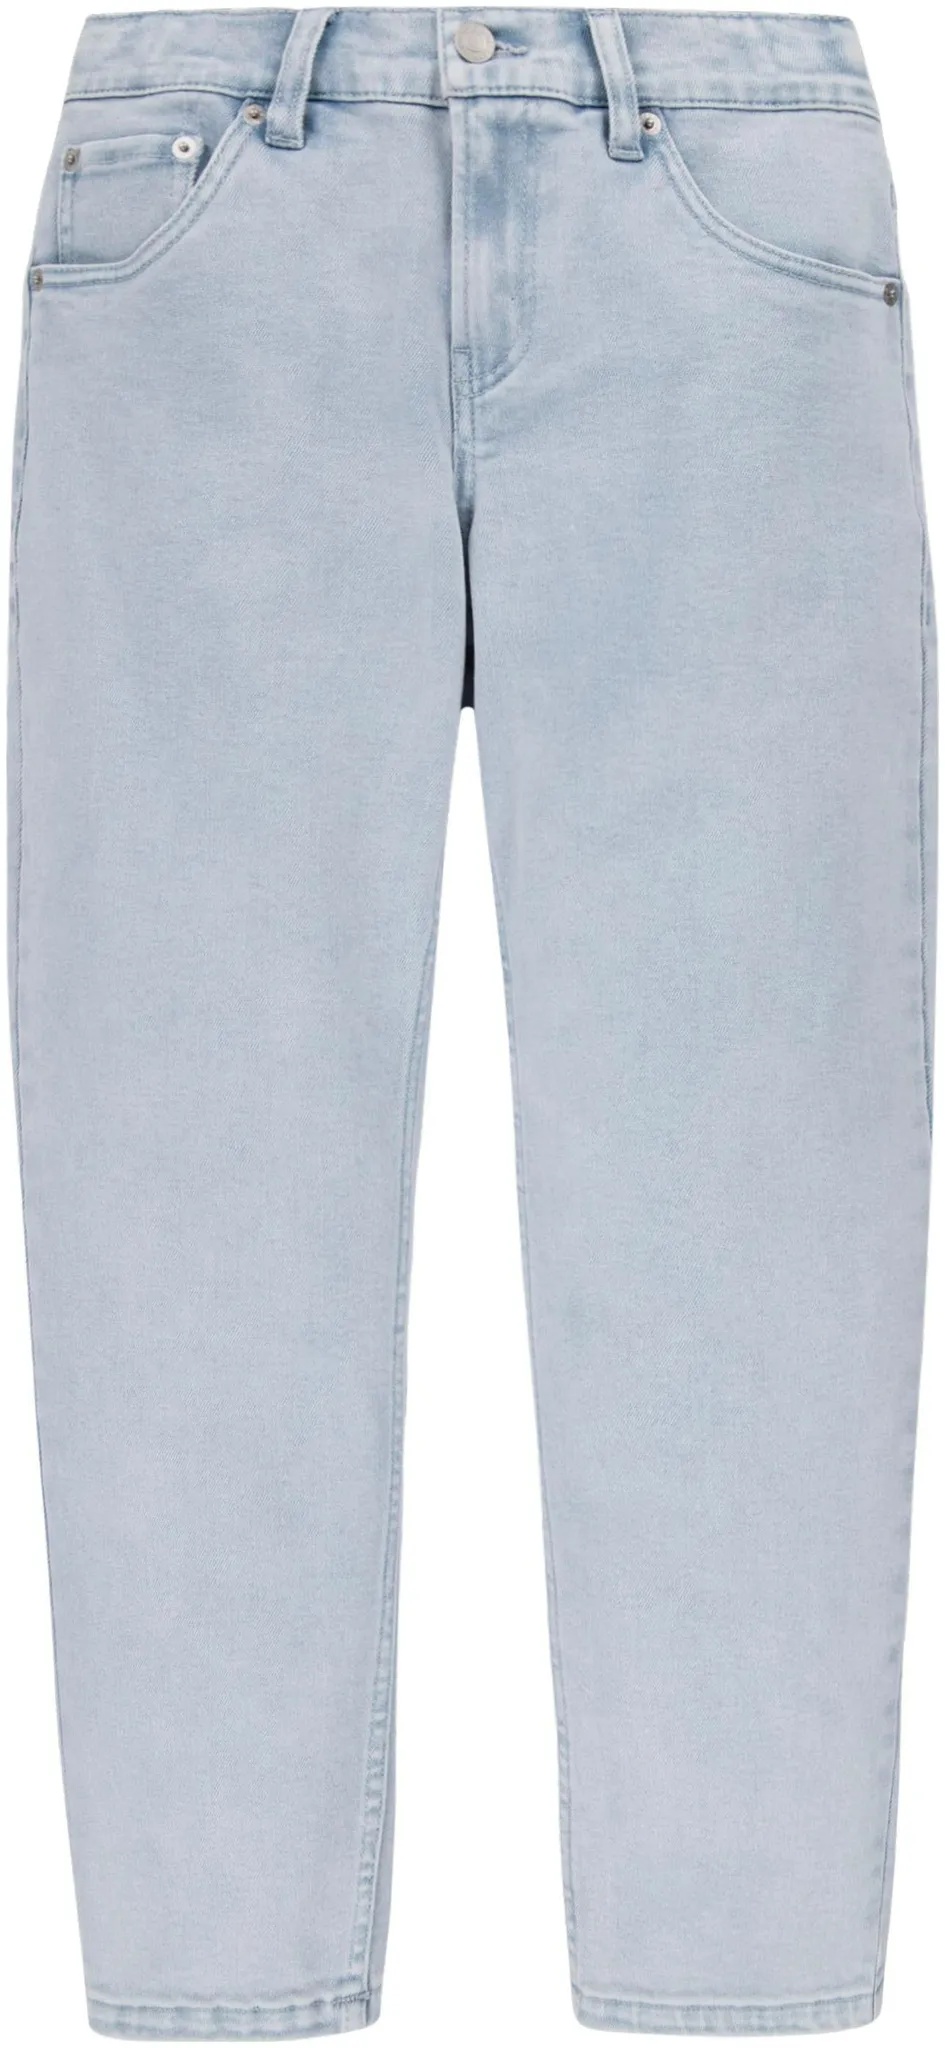 Stretch-Jeans LEVI'S KIDS "LVB STAY LOOSE TAPER JEANS" Gr. 14 (164), N-Gr, silberfarben (silver linin) Jungen Jeans Bekleidung for BOYS